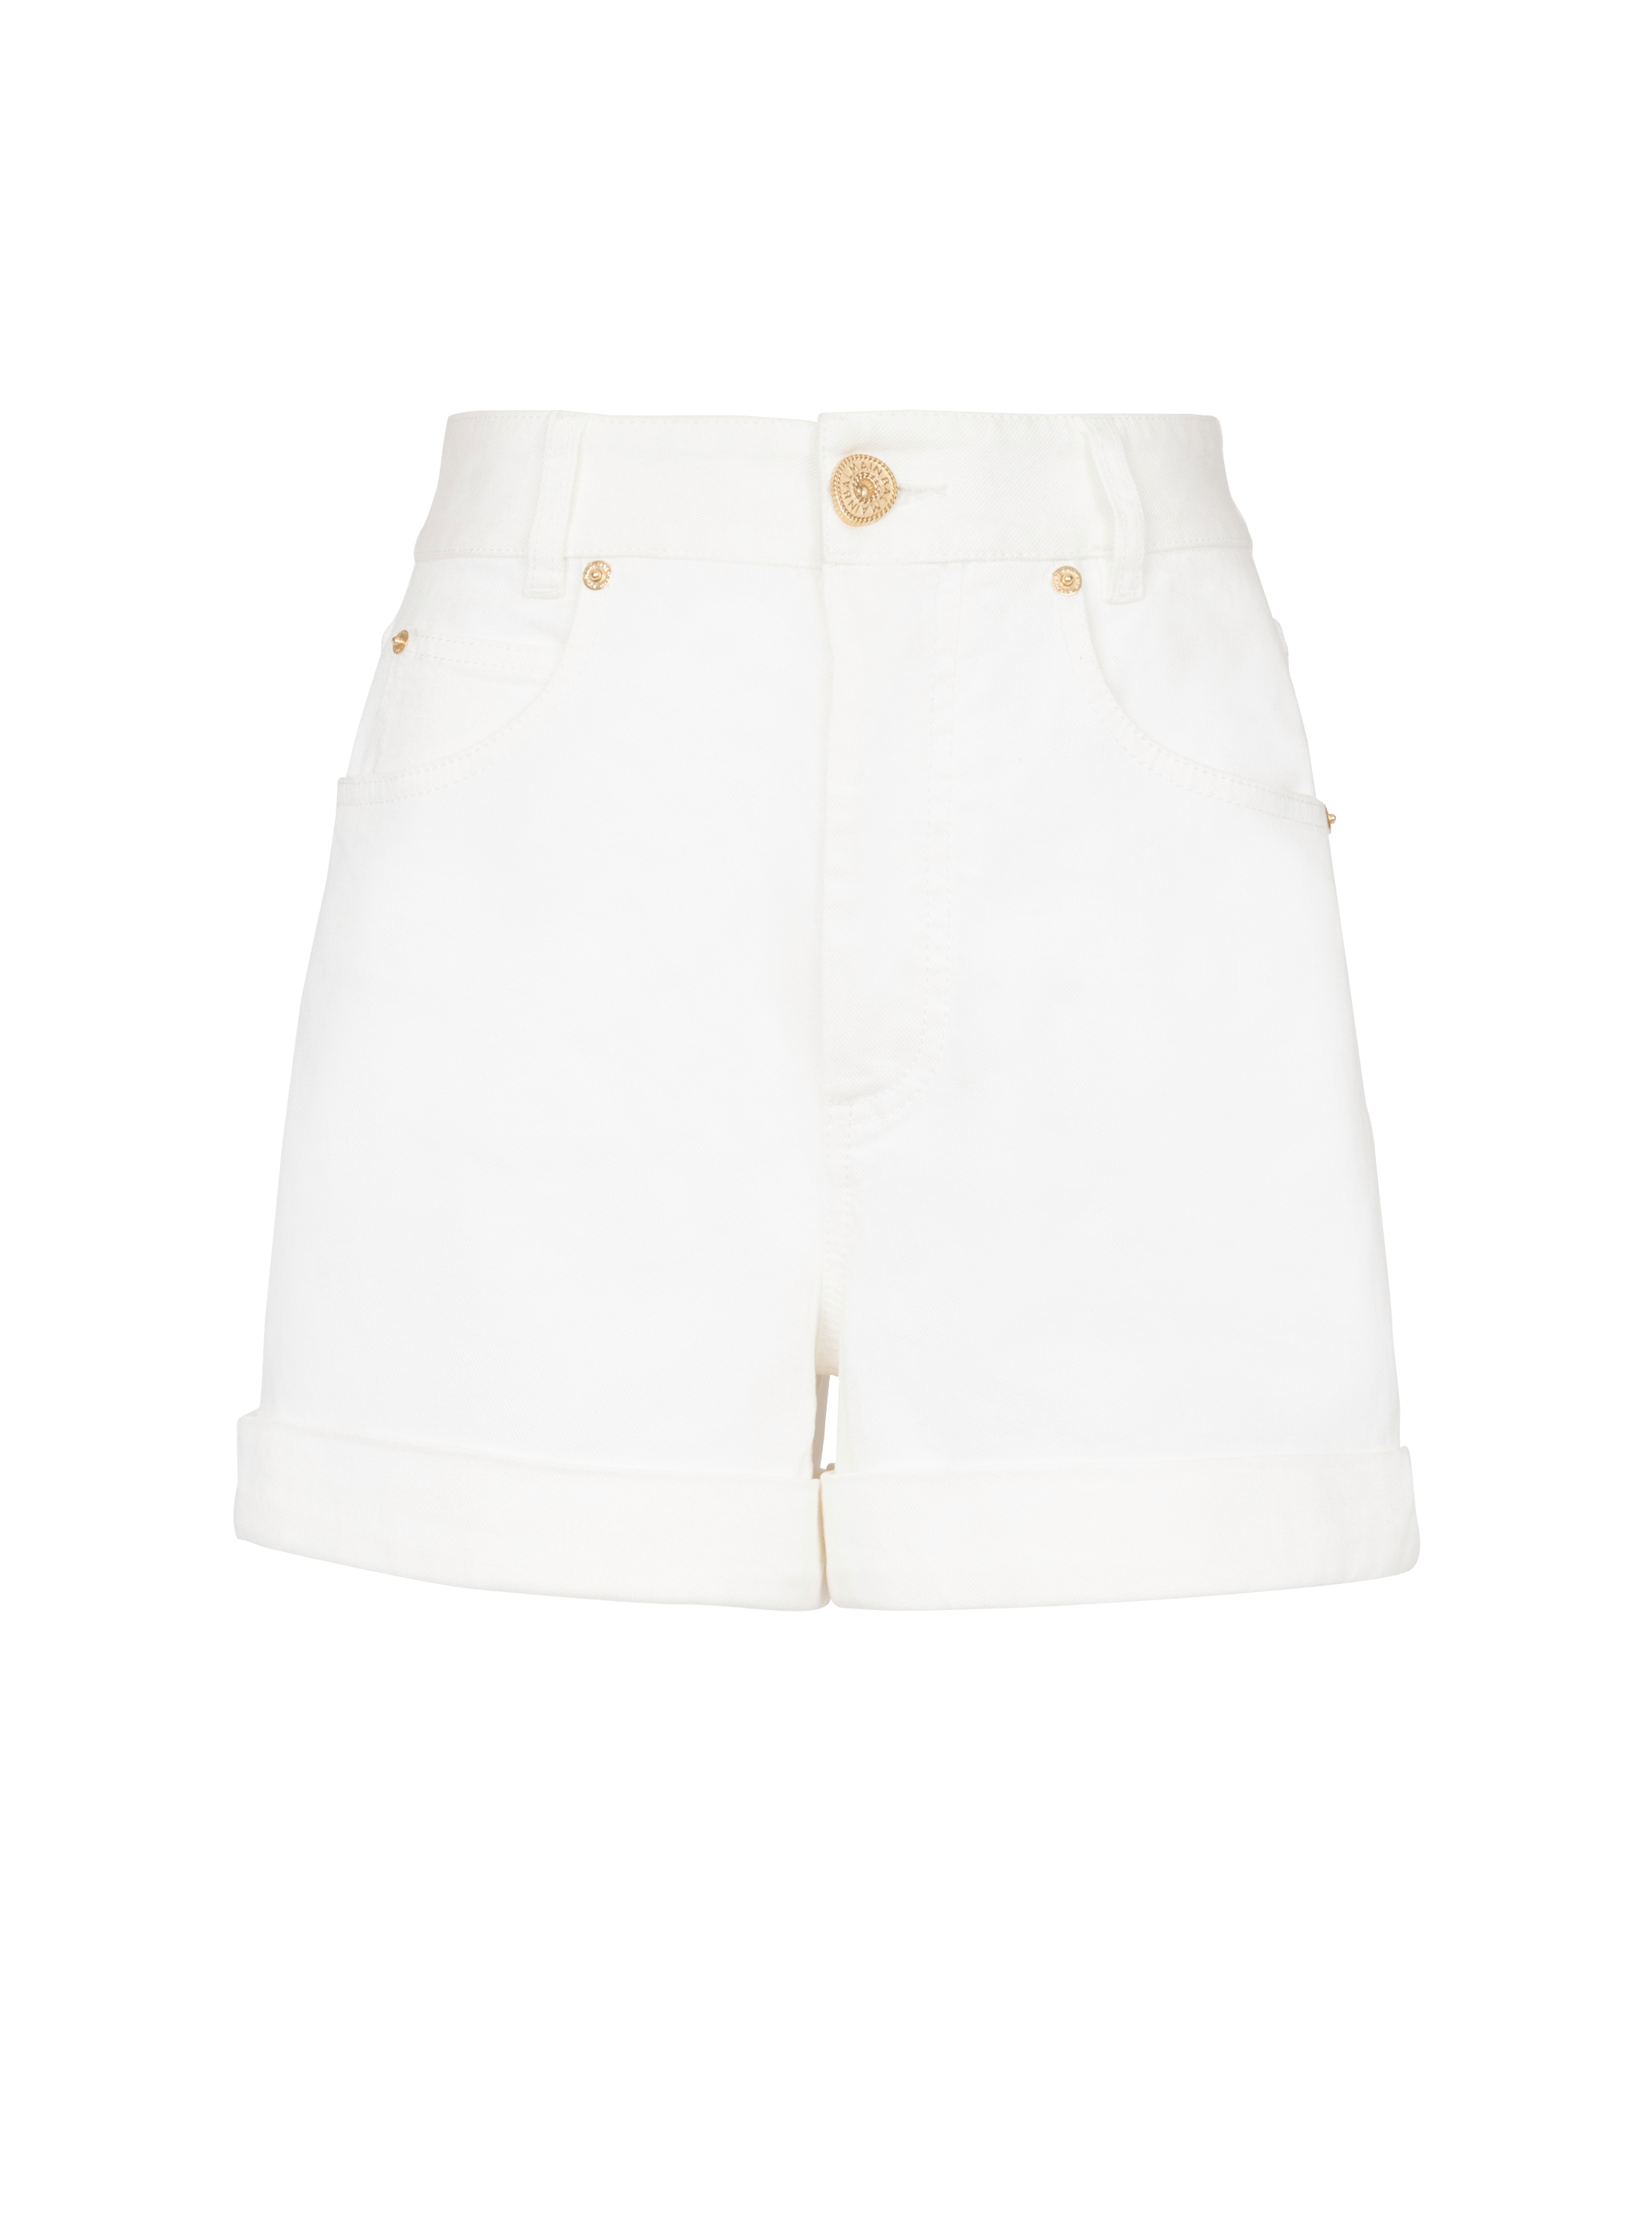 Shorts Jeans Branco com Detalhe Dourado